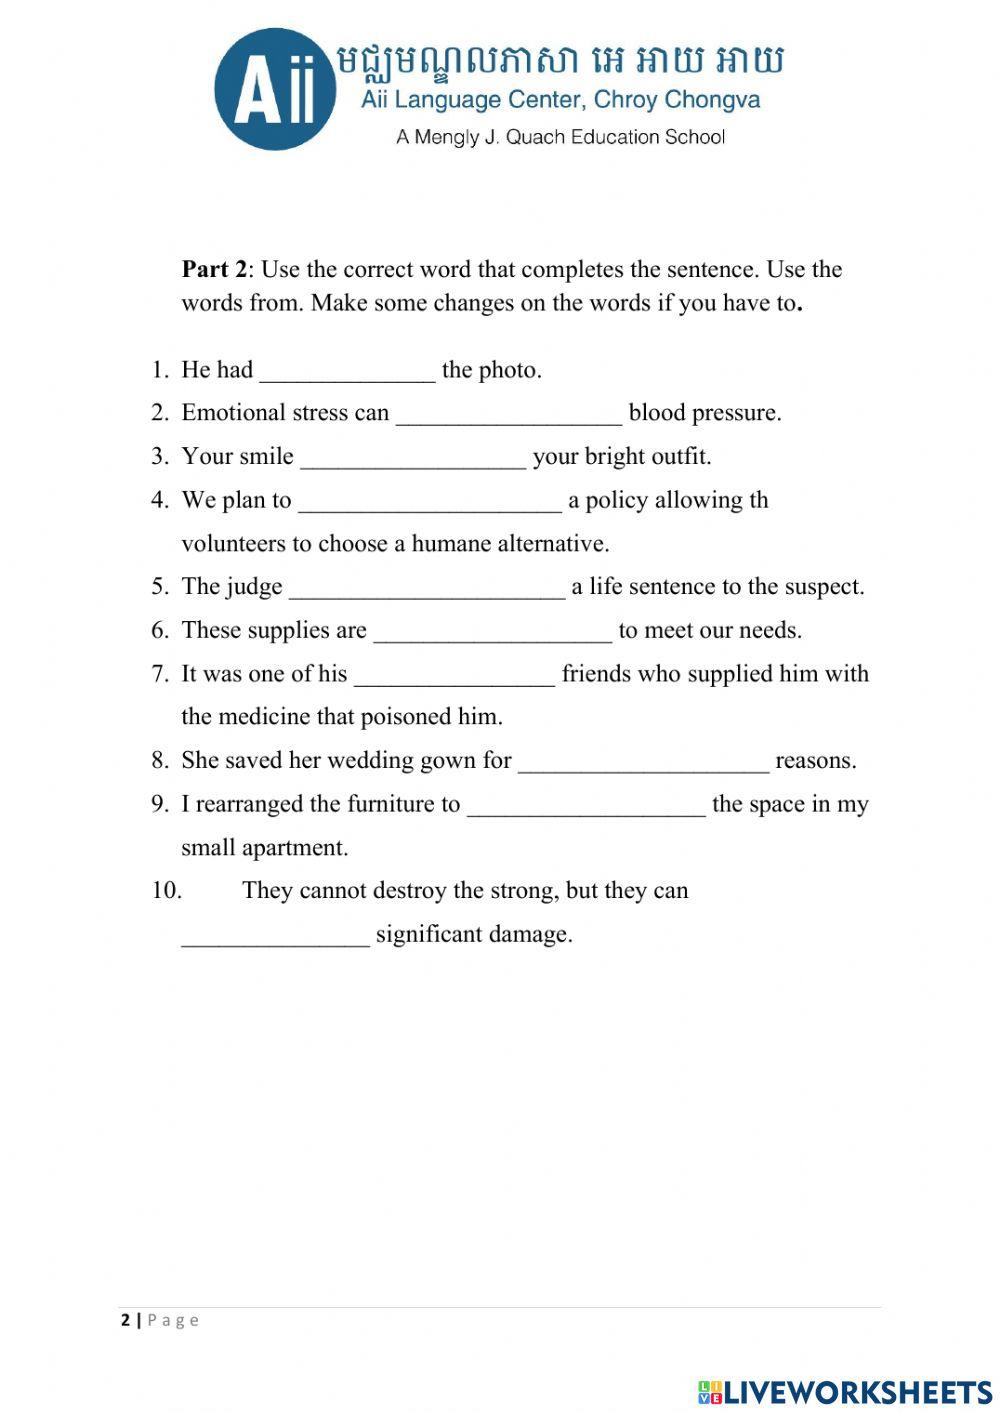 Gep 11a quiz 4